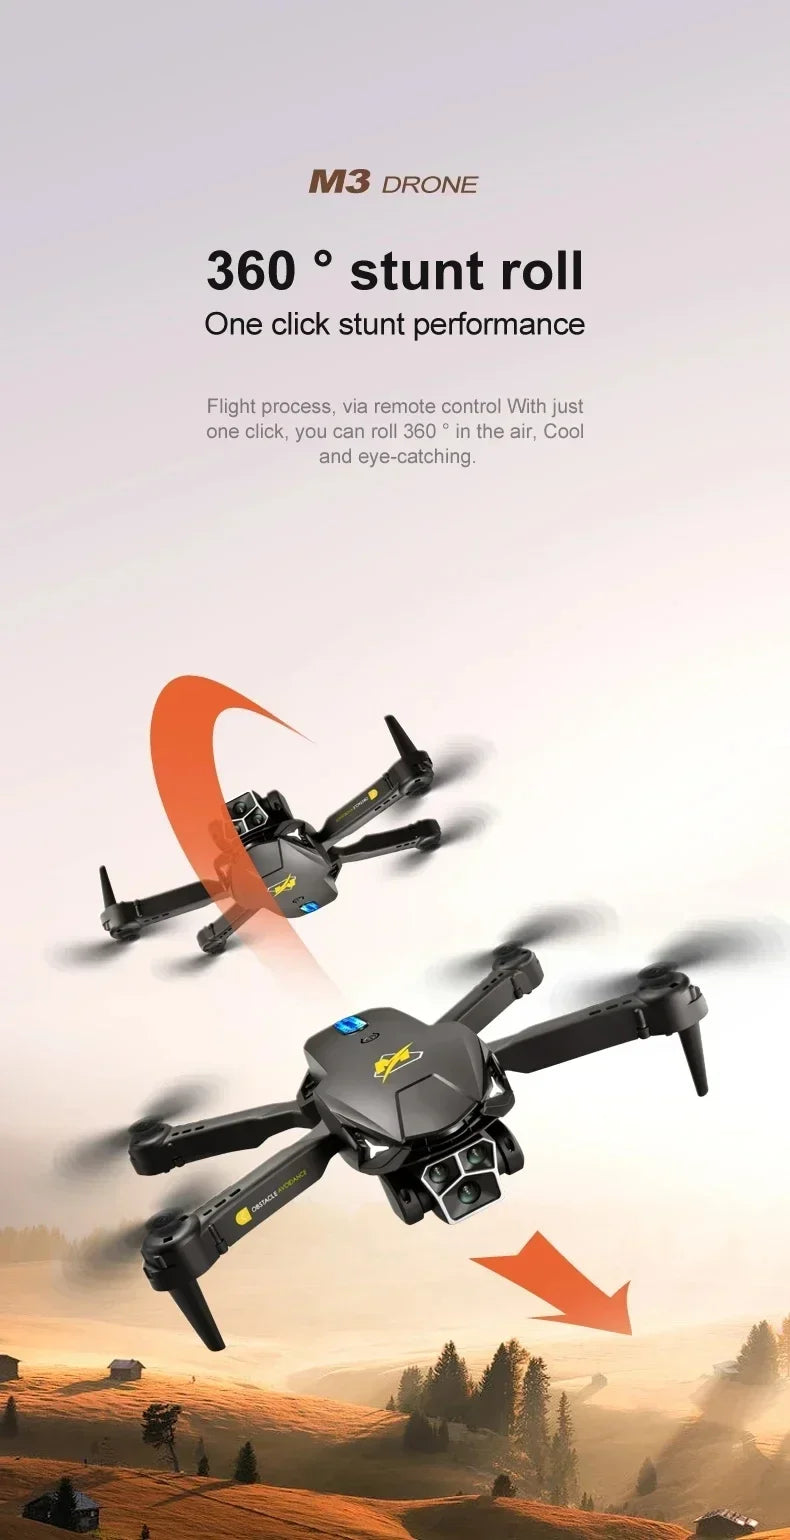 M3 Drone, m3 drone 360 stunt roll one click stunt performance flight process